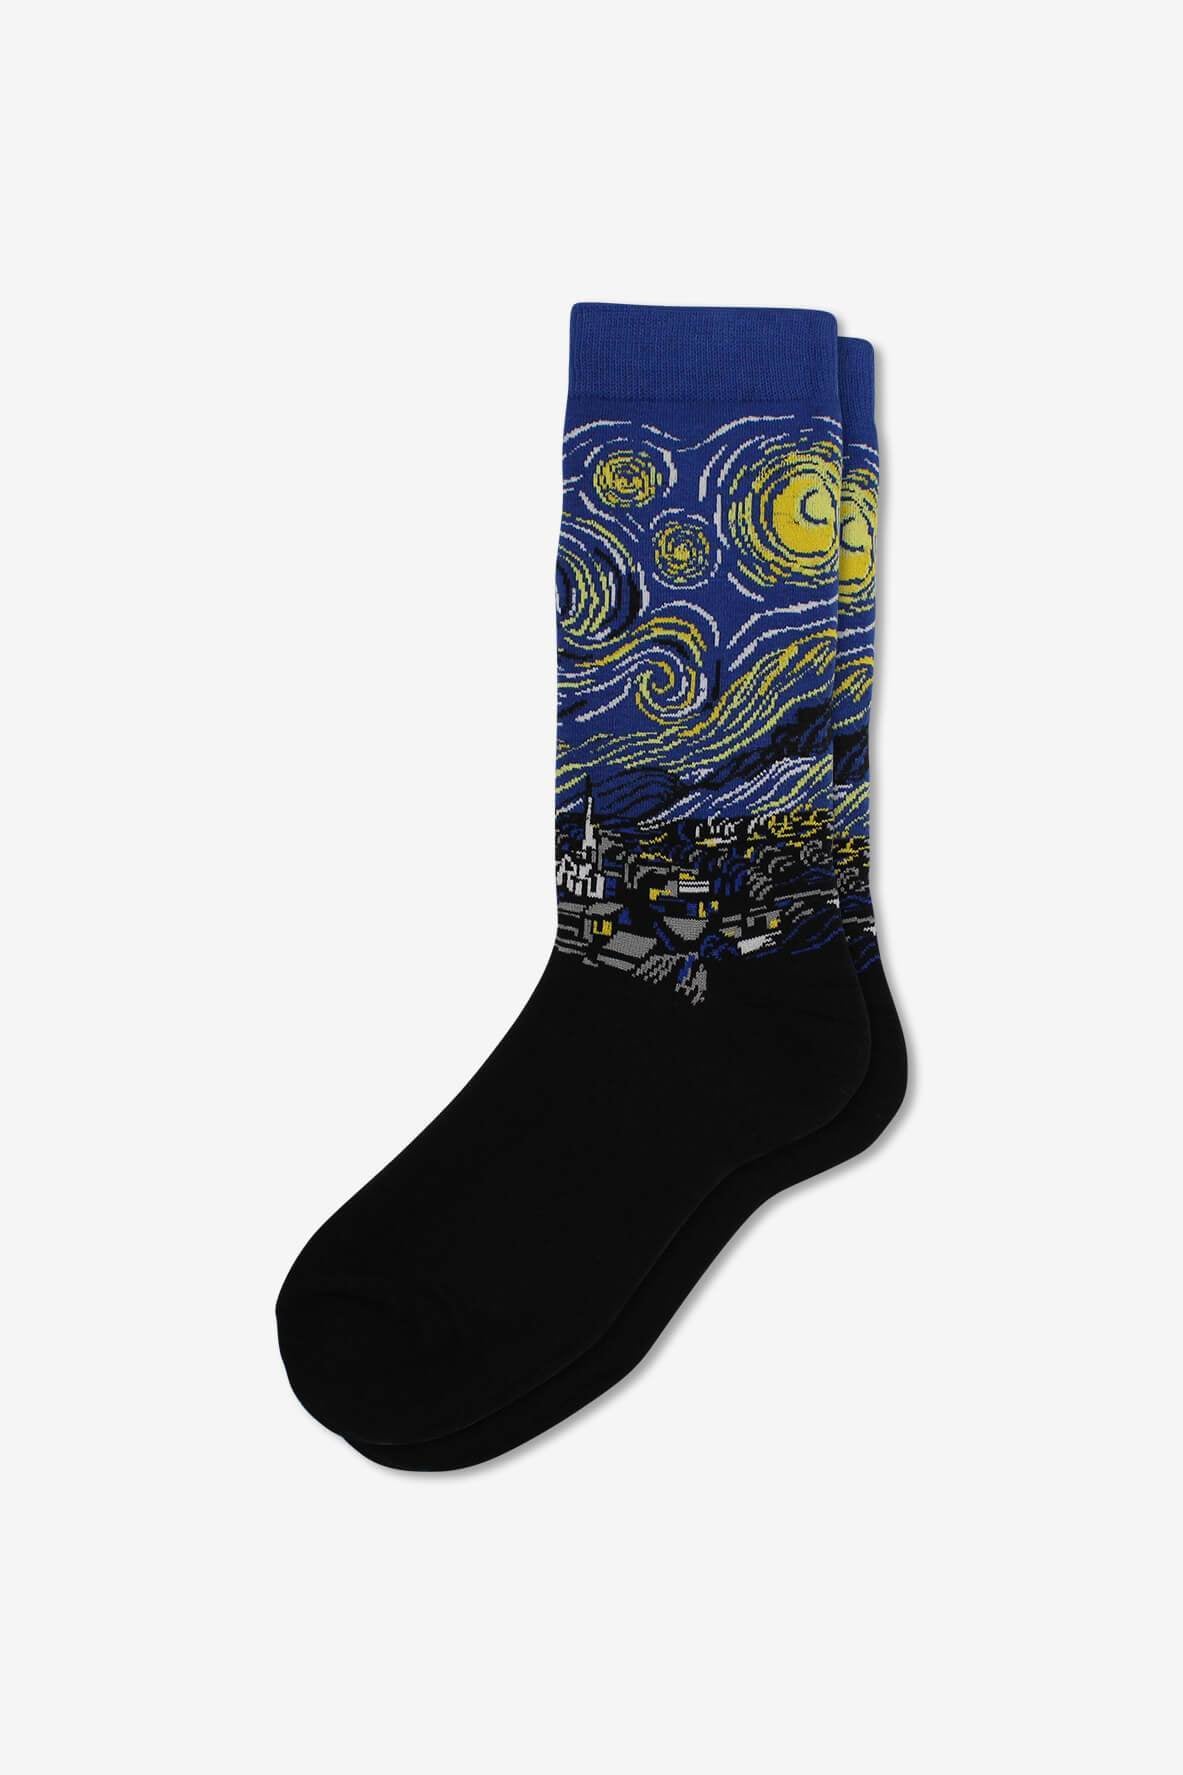 Socks IMG_5305, socks, GoTie